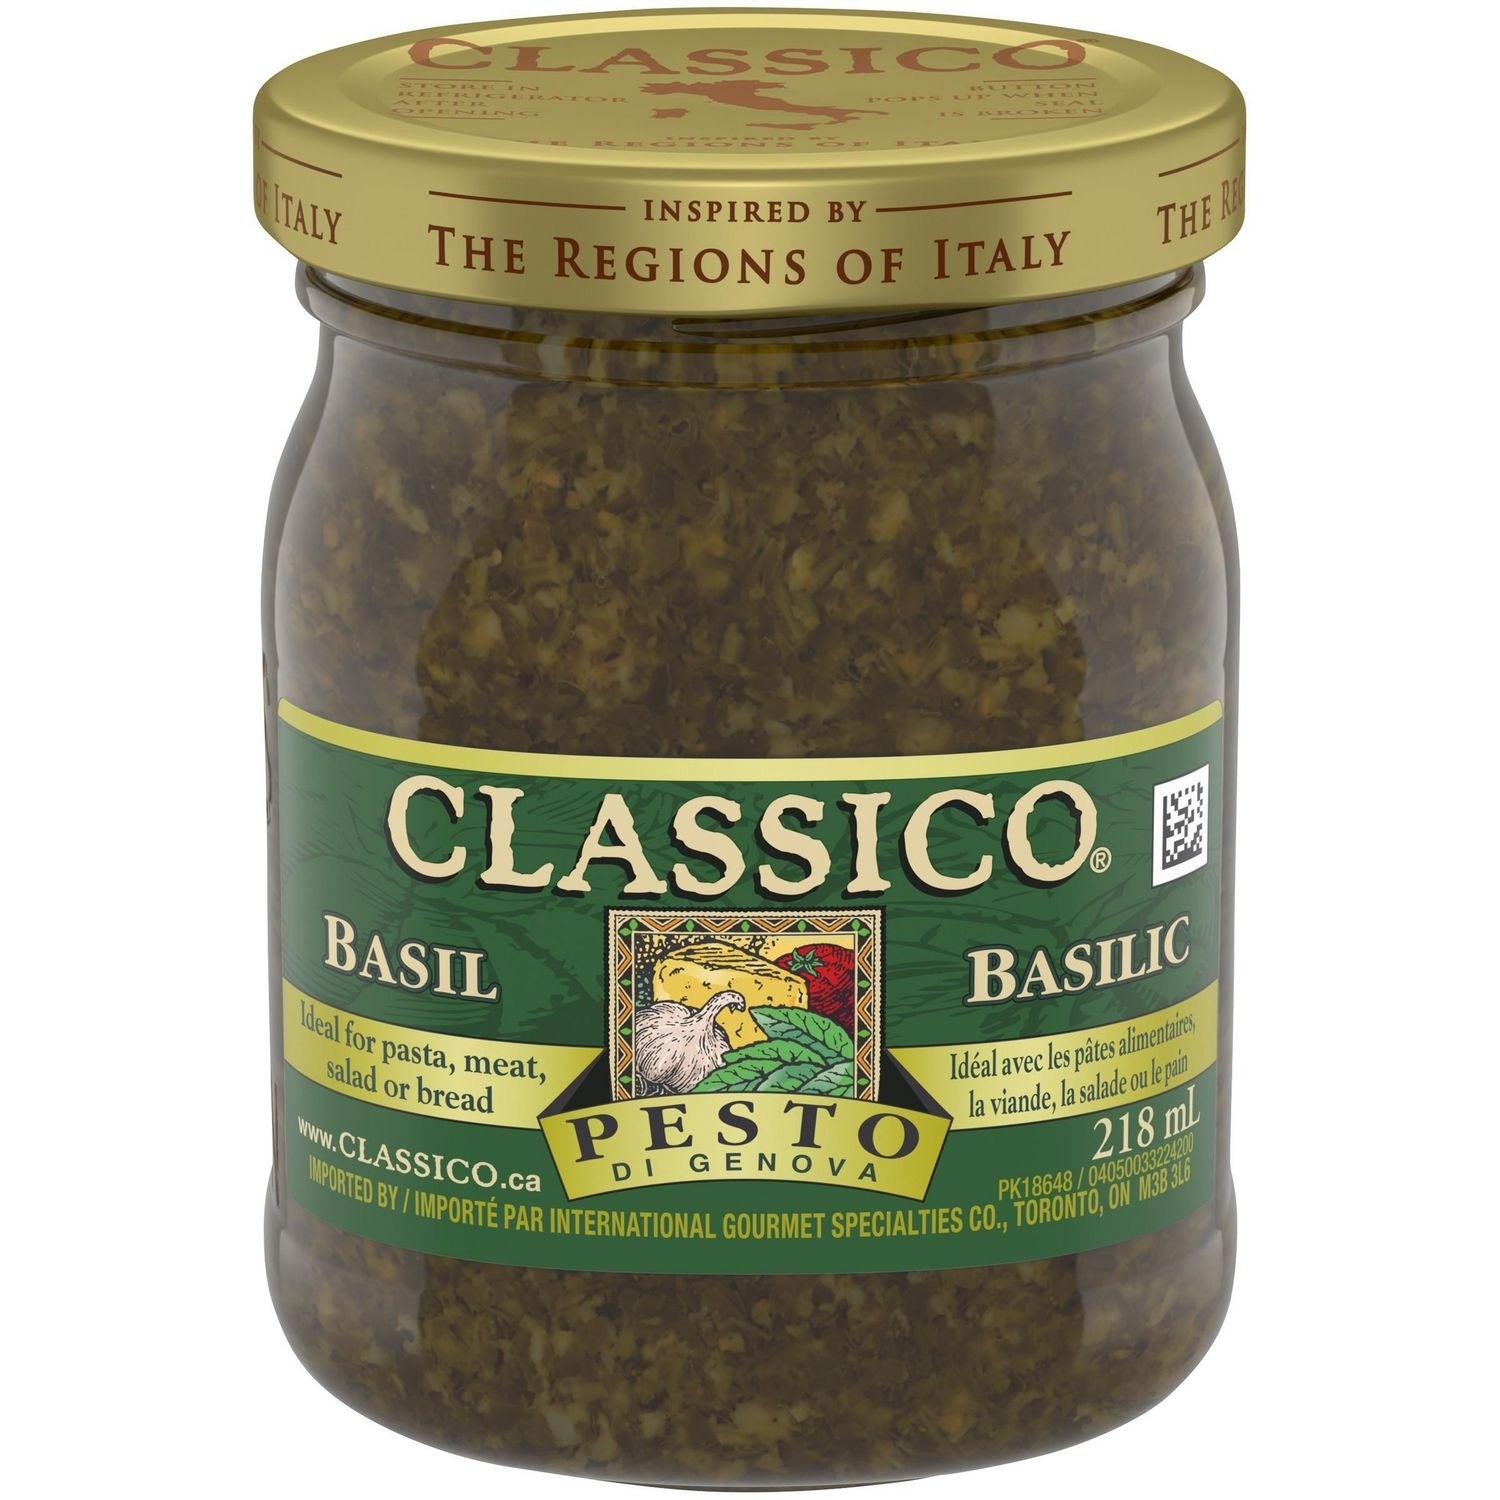 Classico Pesto di Genova Basil 218ml